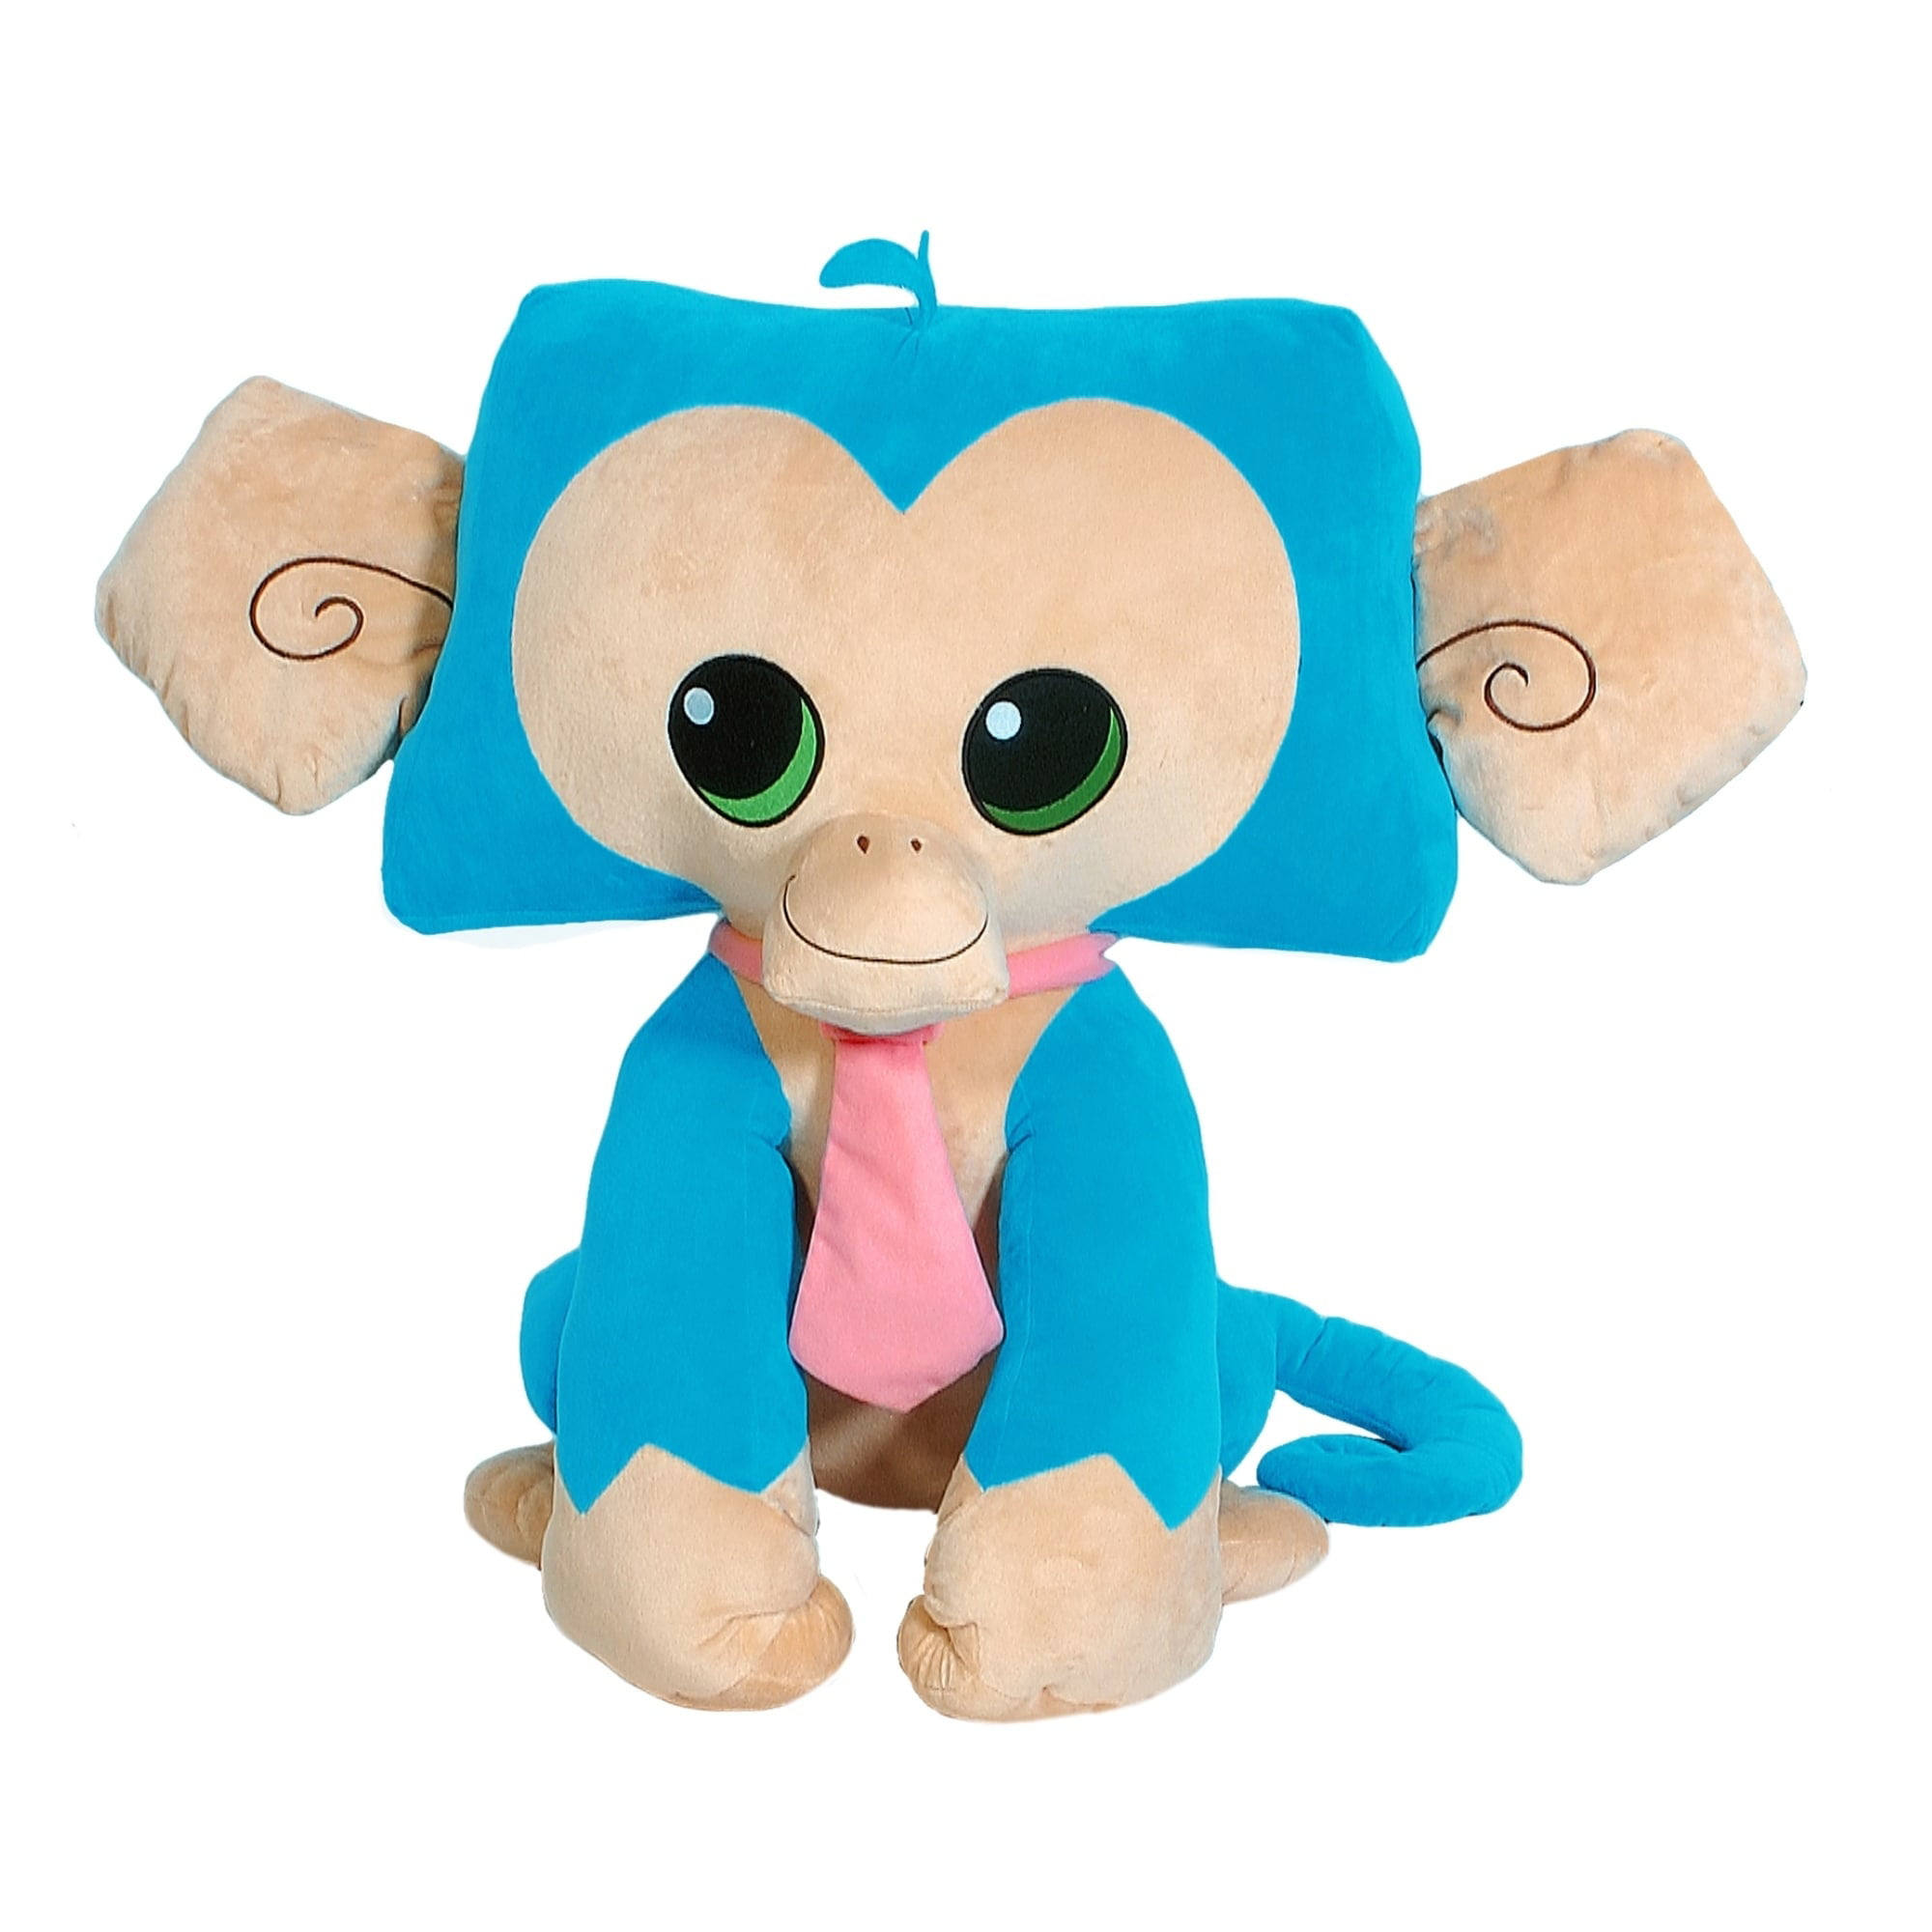 Monkey Plushie, Animal Jam Wiki